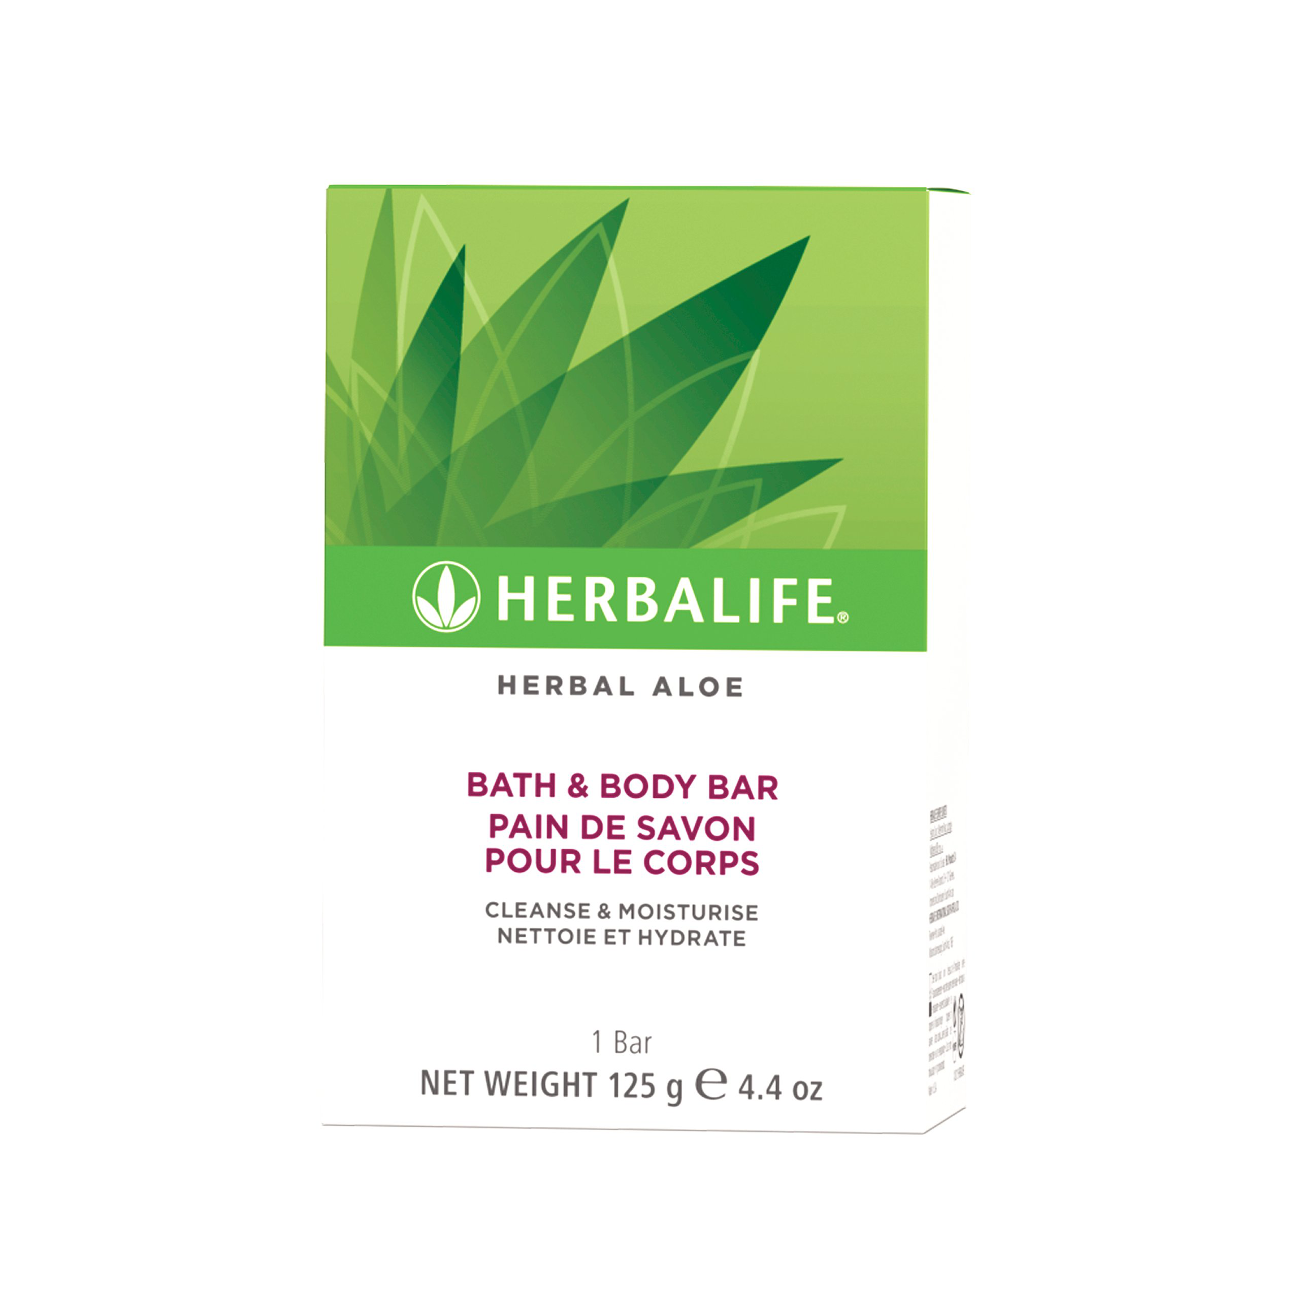 Herbal Aloe Bath & Body Bar  product shot.